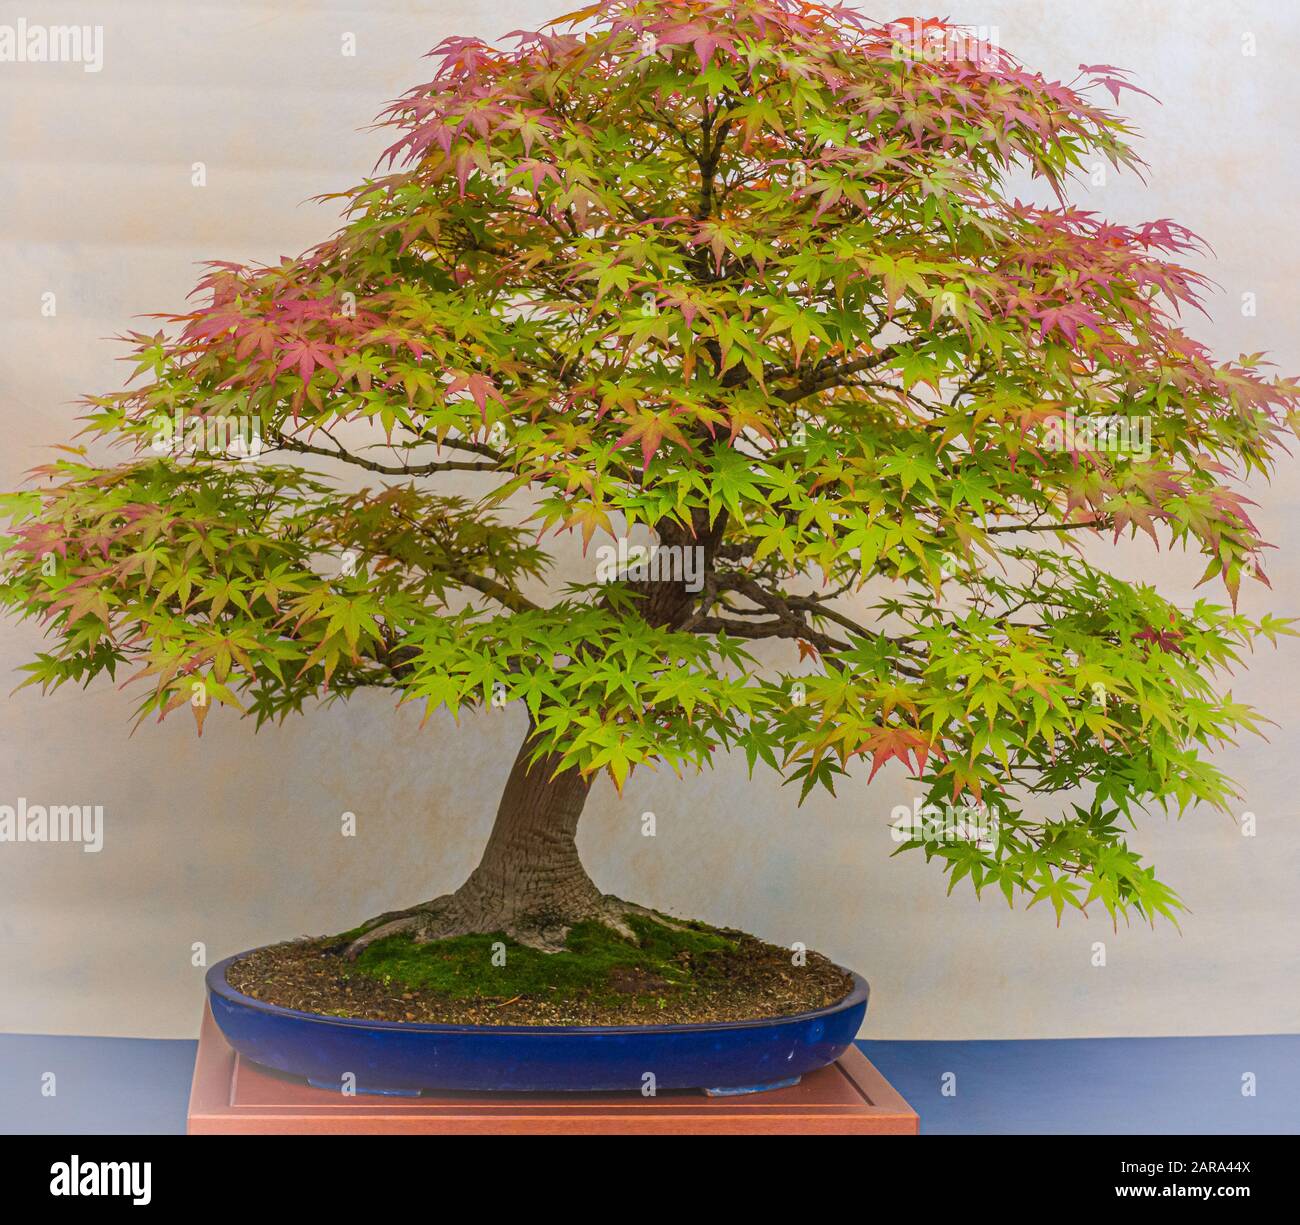 Ein kleiner Bonsai-Baum in einem Keramiktopf. Acer Palmatum. Bonsai  japanischer Ahorn-Baum. Herbstfarben Stockfotografie - Alamy